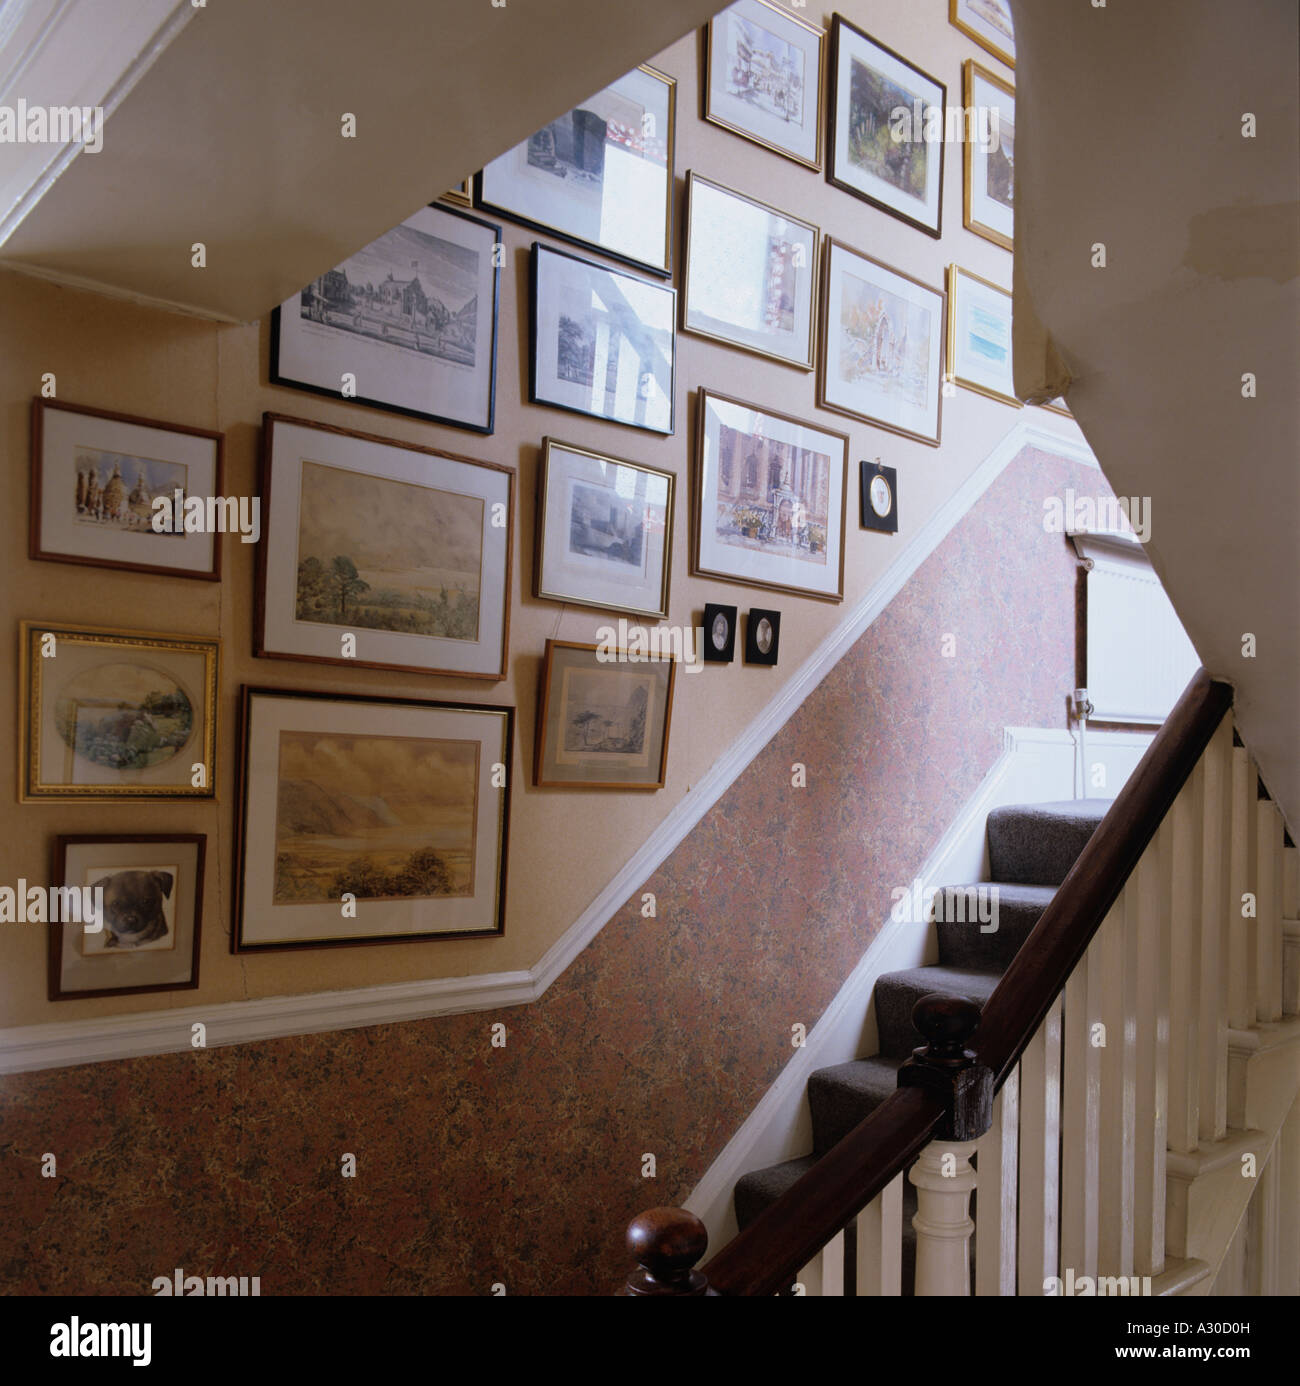 Treppe und Wand von Bildern und Grafiken Stockfoto